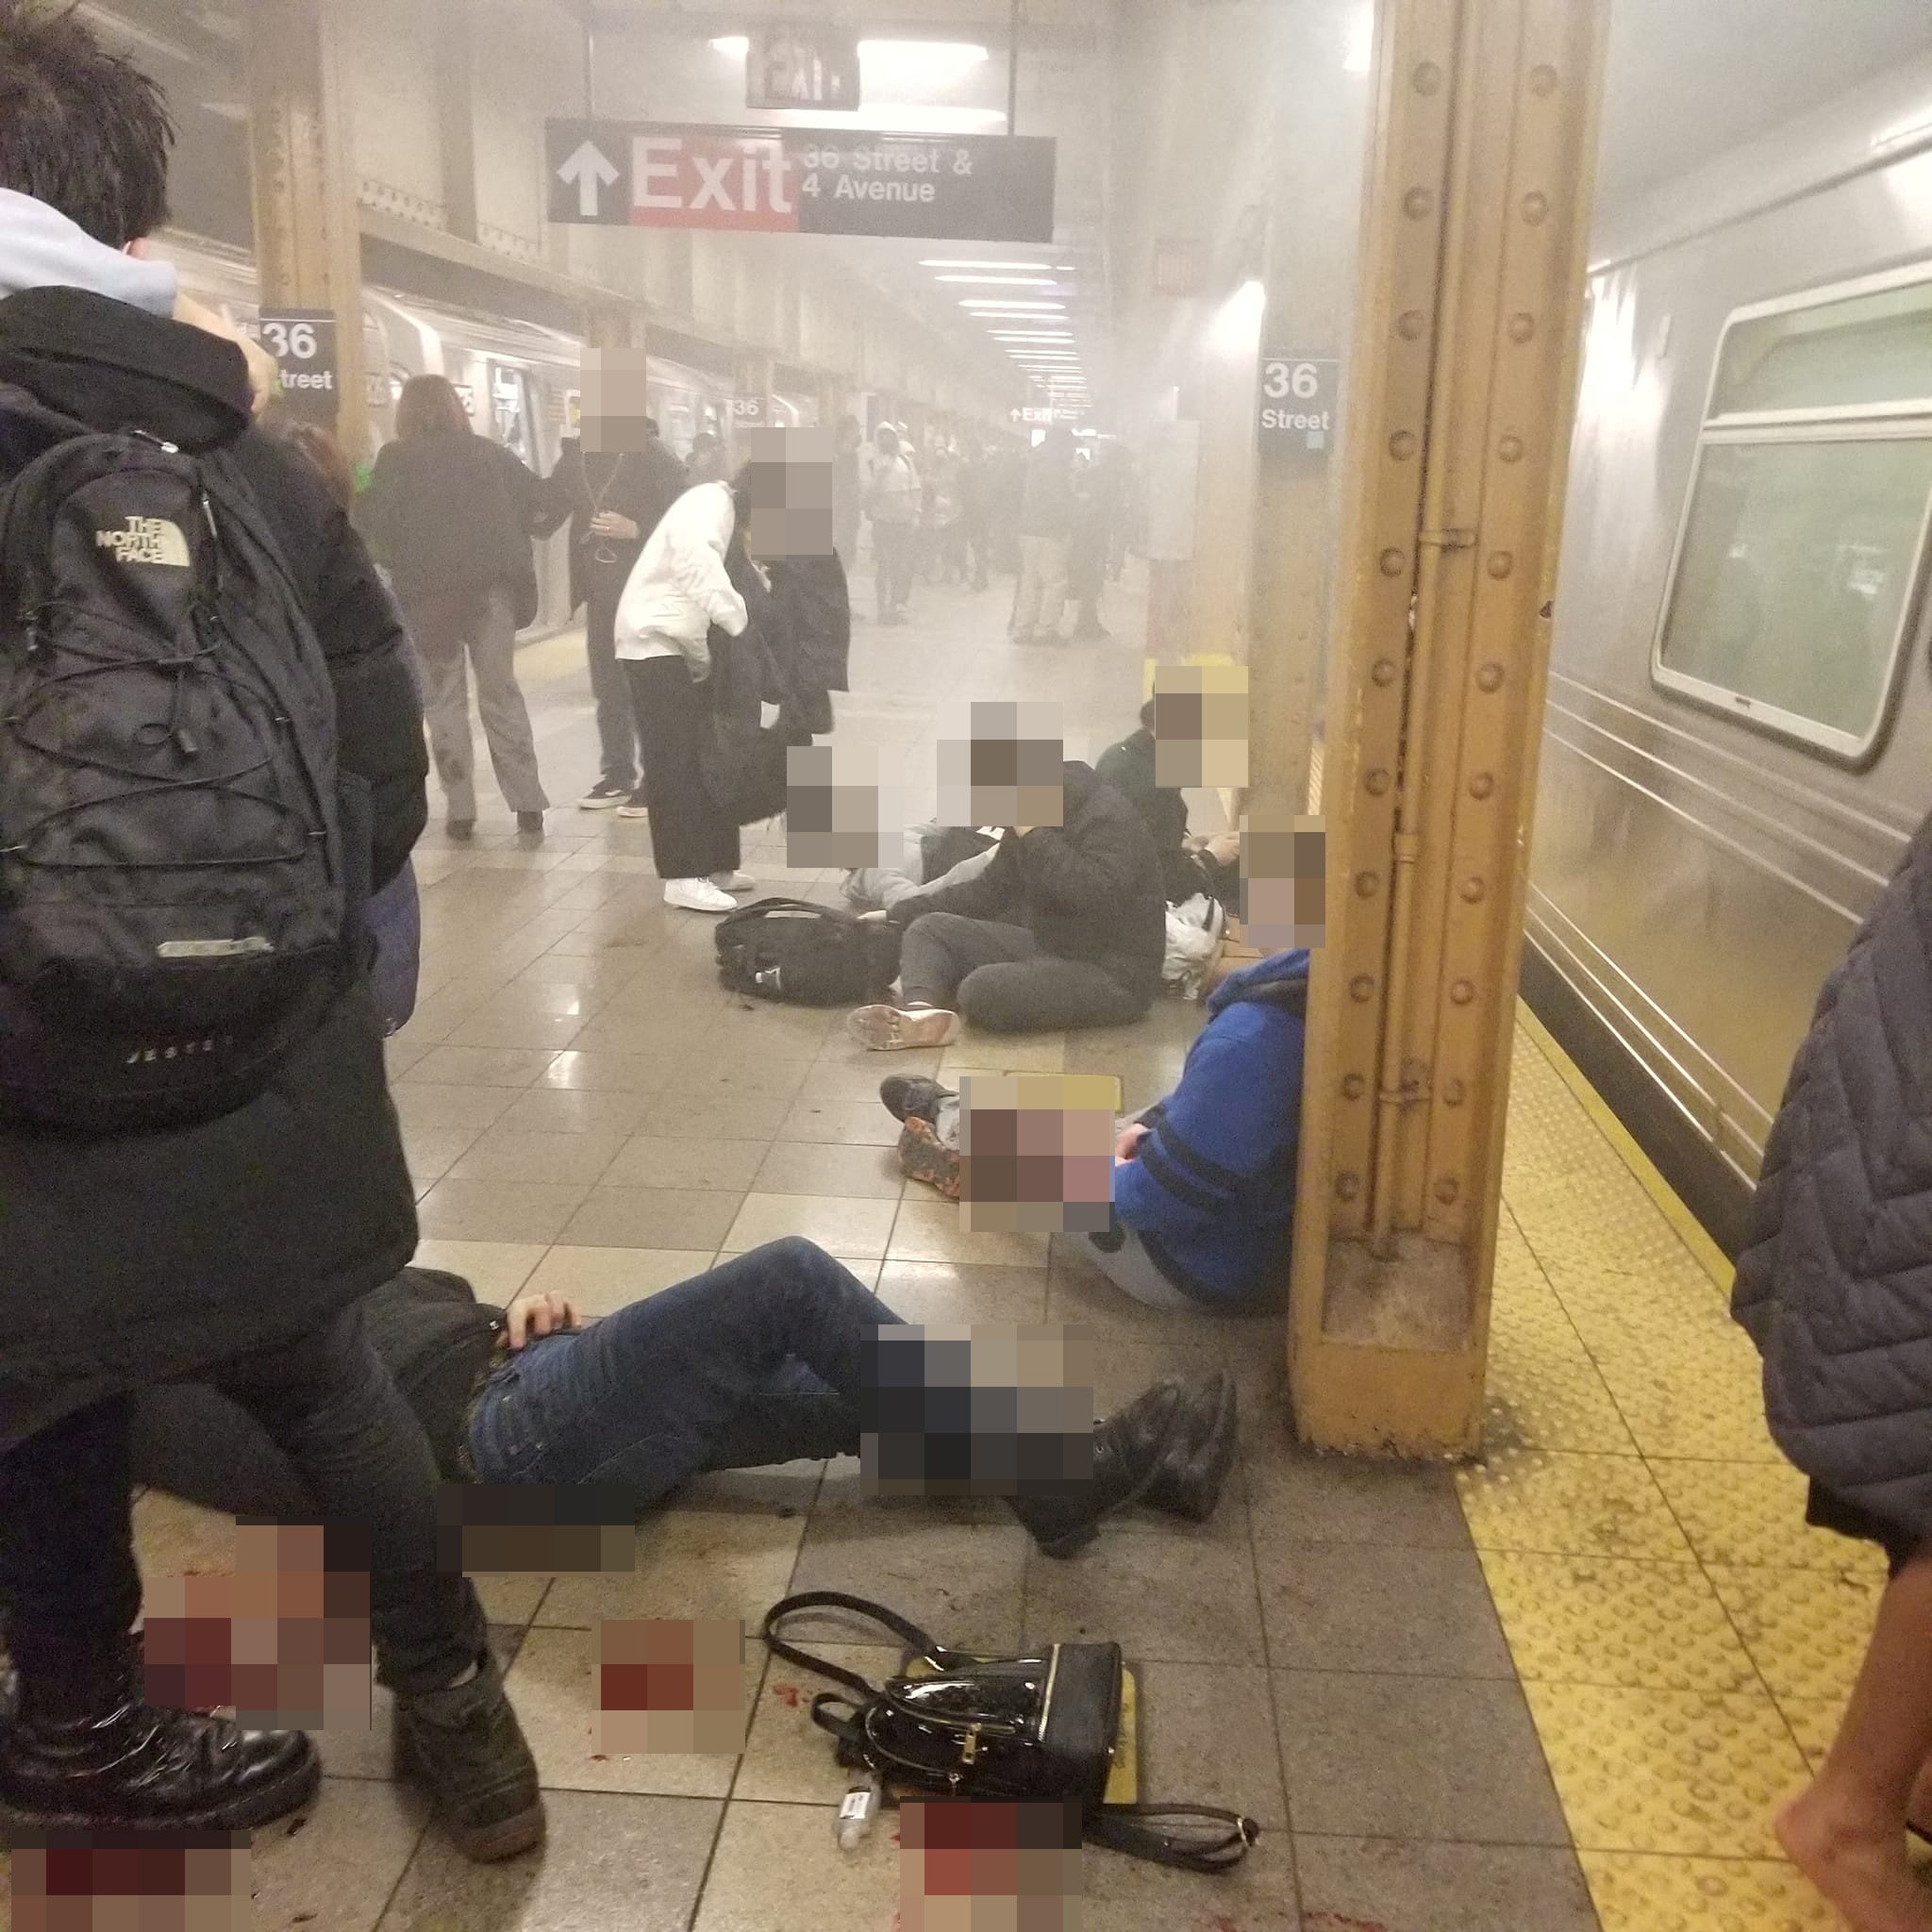 Las víctimas yacen en el andén del metro tras el ataque en la estación de la calle 36 de Brooklyn el 12 de abril